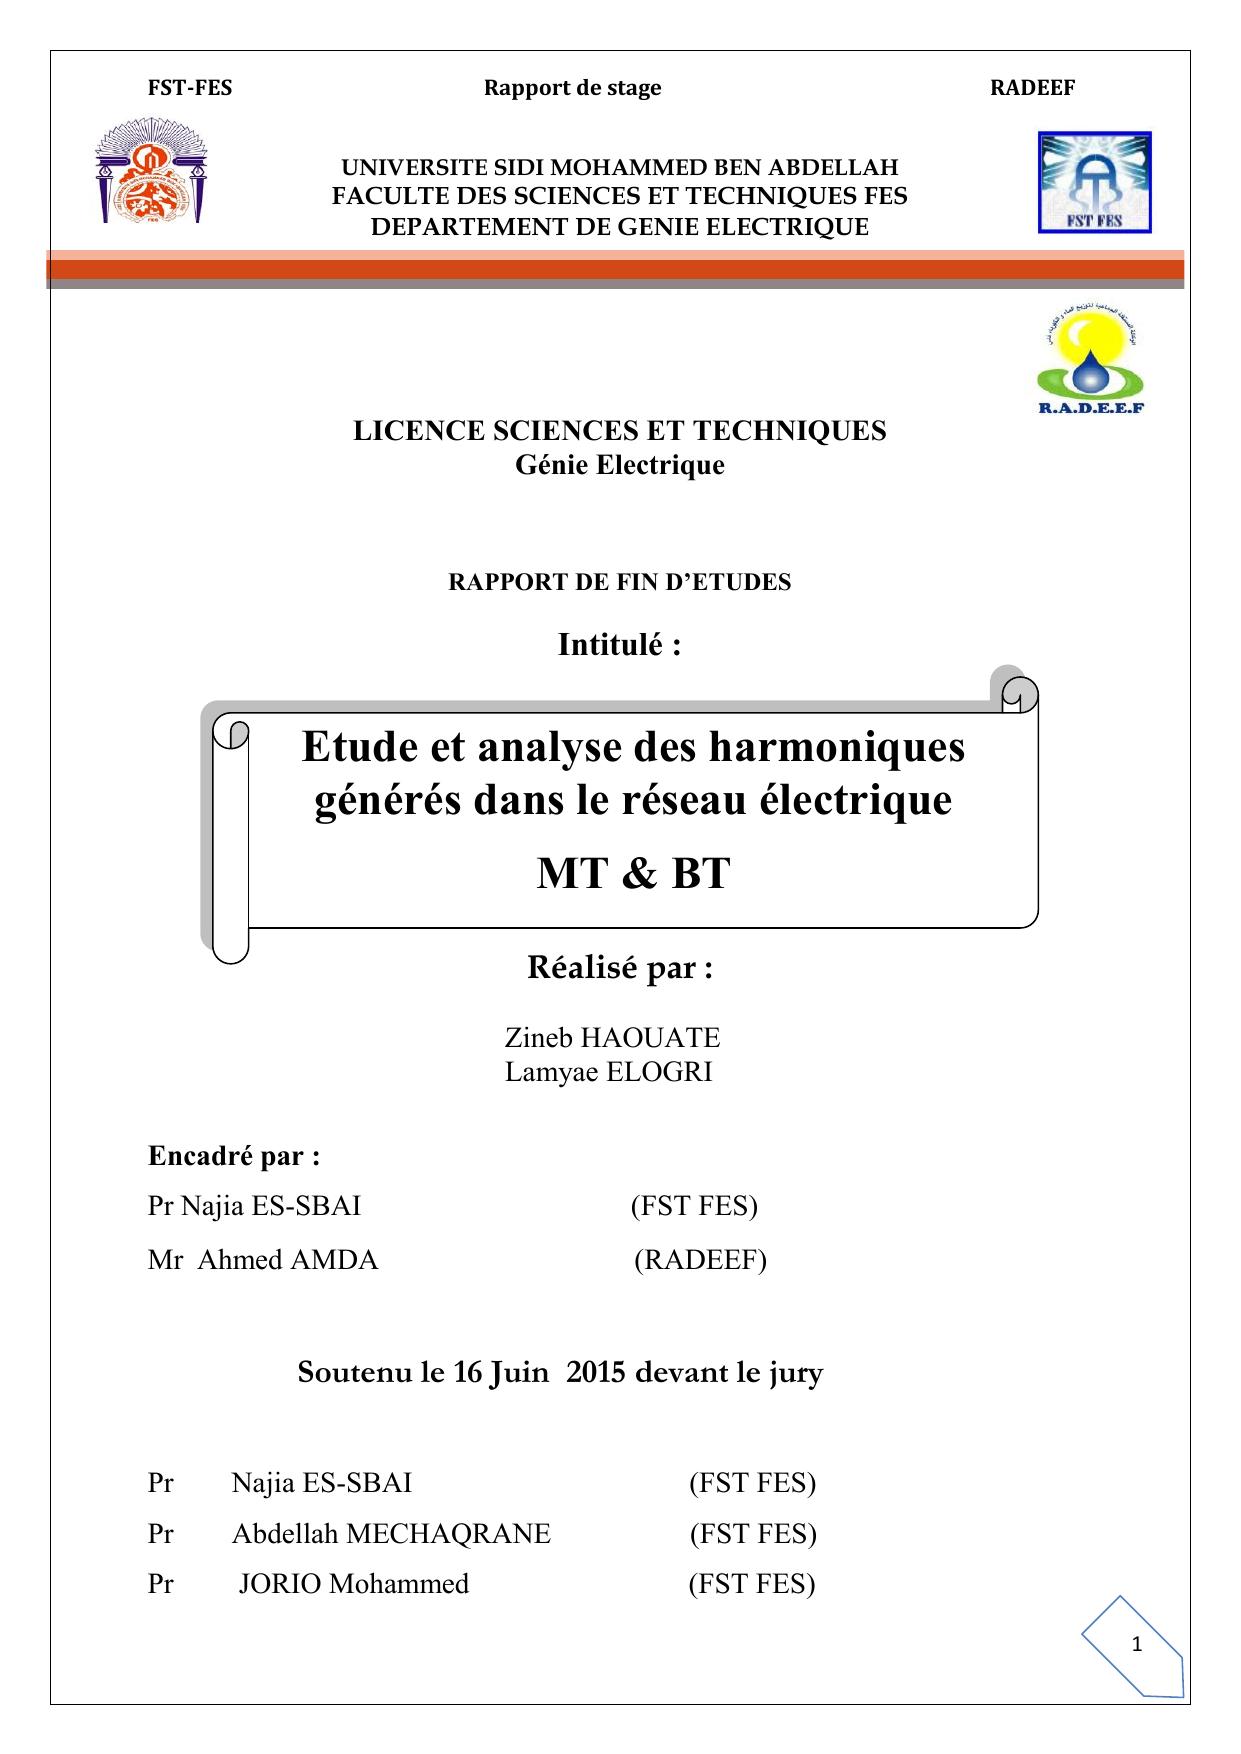 Etude et analyse des harmoniques générés dans le réseau électrique MT & BT